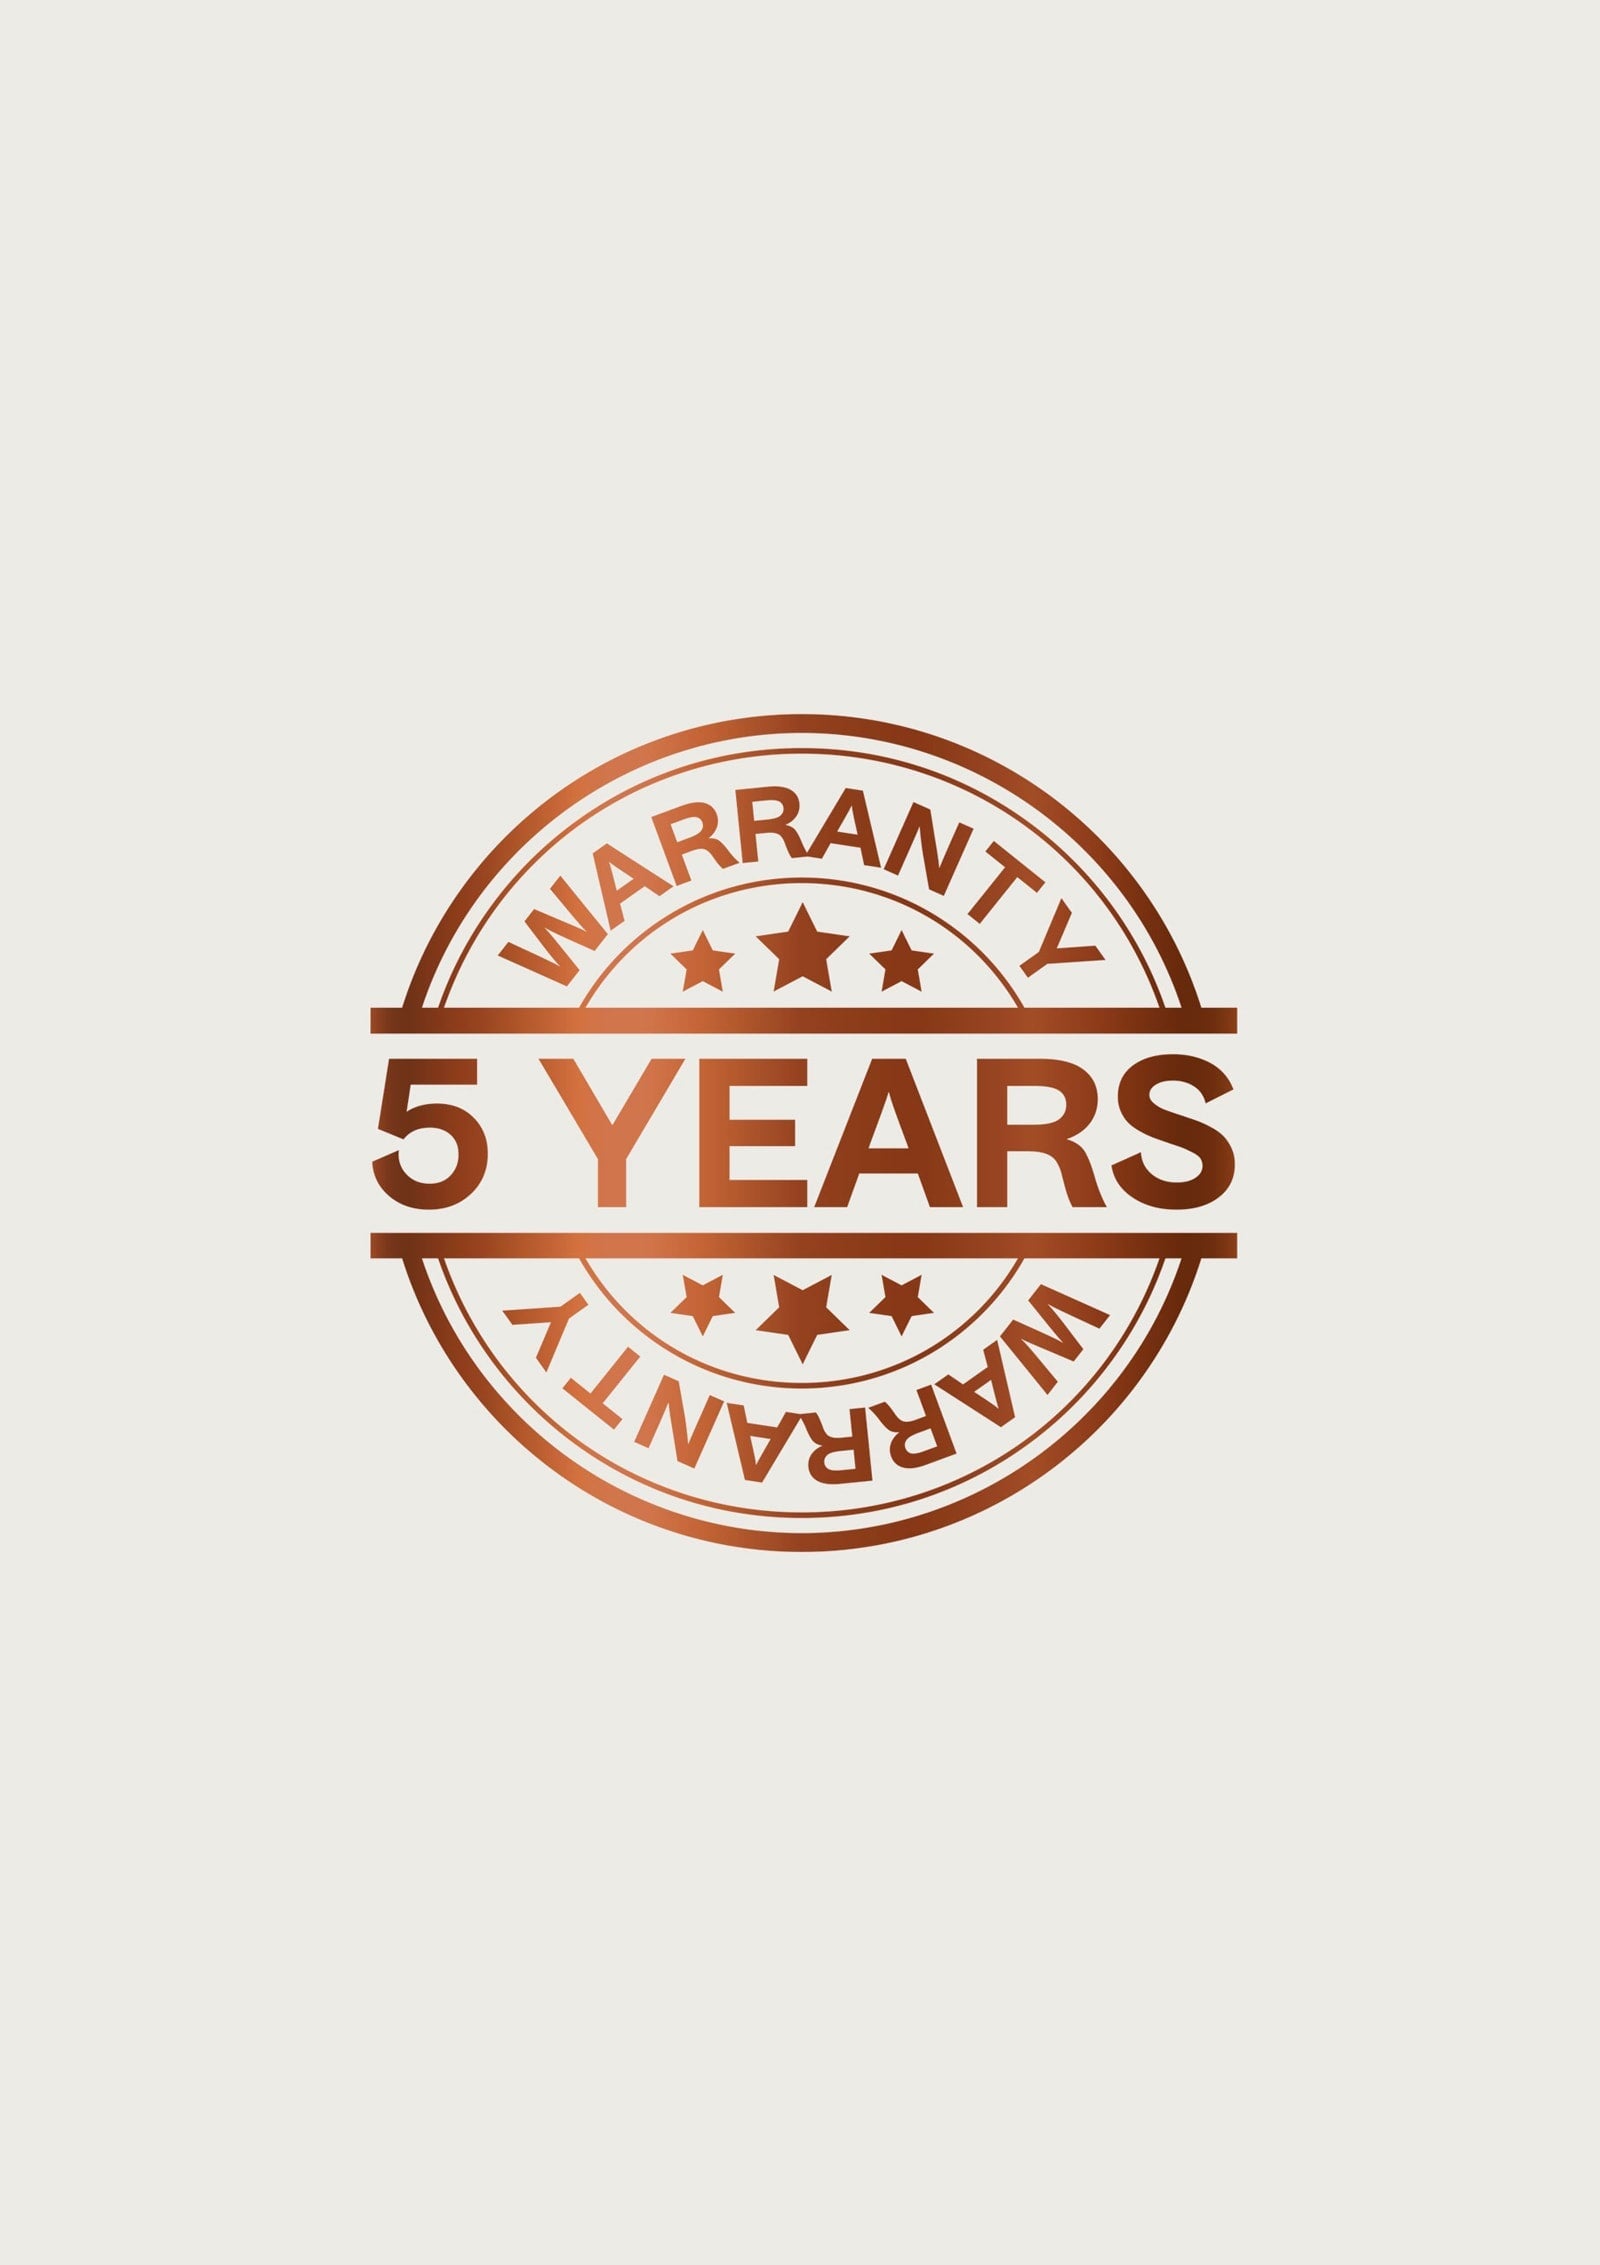 5 Years Extended Warranty Bathmatedirect1 